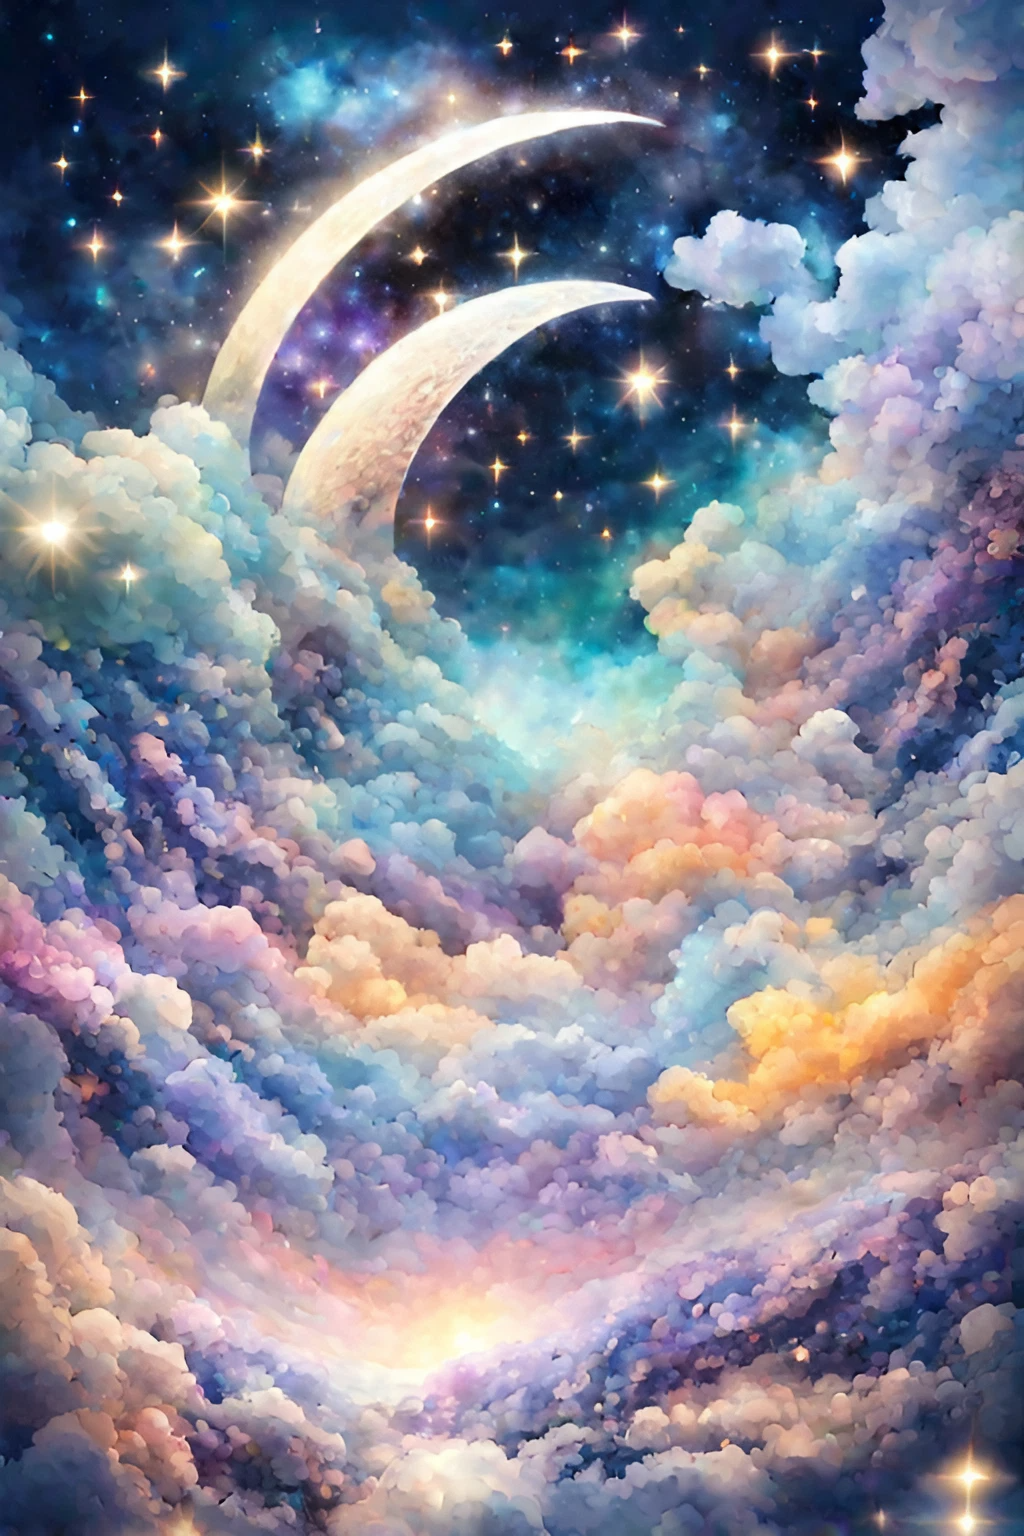 流れる美しい雲と癒しのファンタジーでメルヘンな夜空の星と大きな月リアルの無料イラスト画像素材